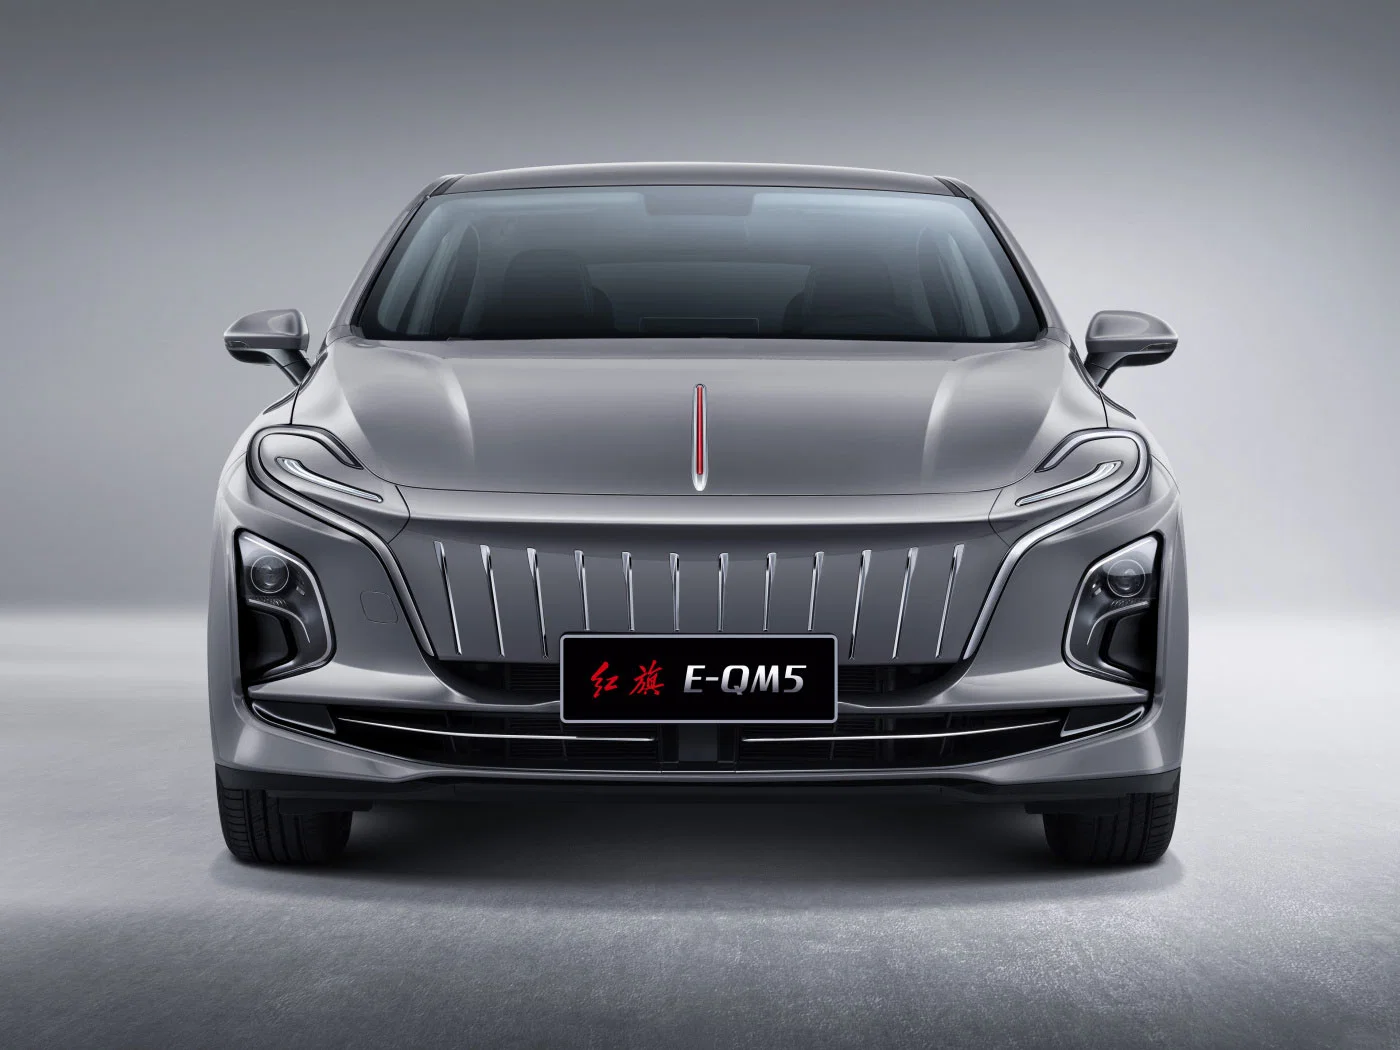 En promoción Hongqi 5 asientos Middle EV fábrica de coches de taxi Directamente suministro de coches nuevos coche usado mejor vendedor Nueva energía Vehículo barato Nueva Energía coche eléctrico